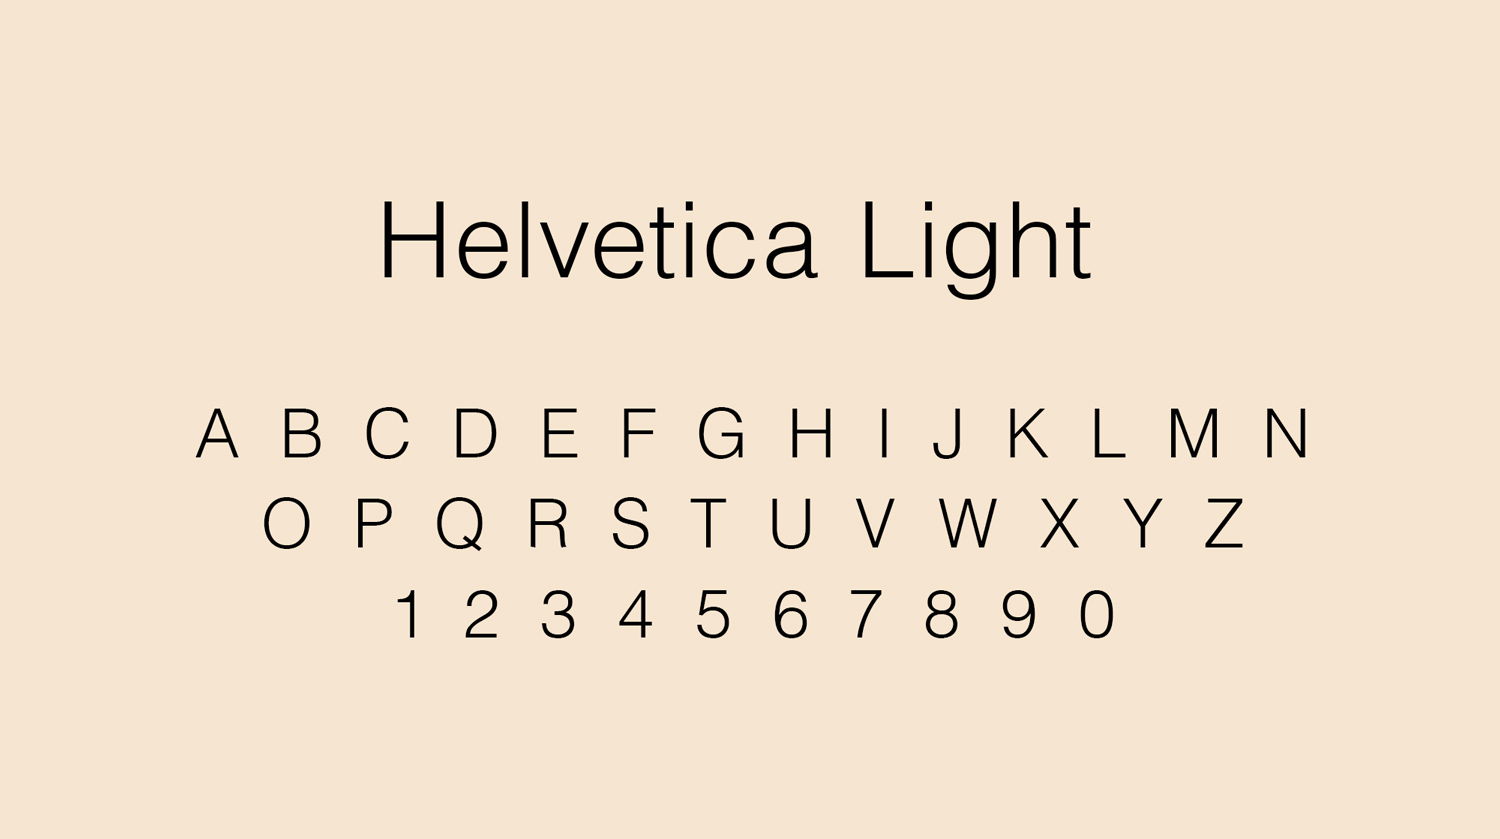 hermetica-adam-islaam-typography-font-helvetica